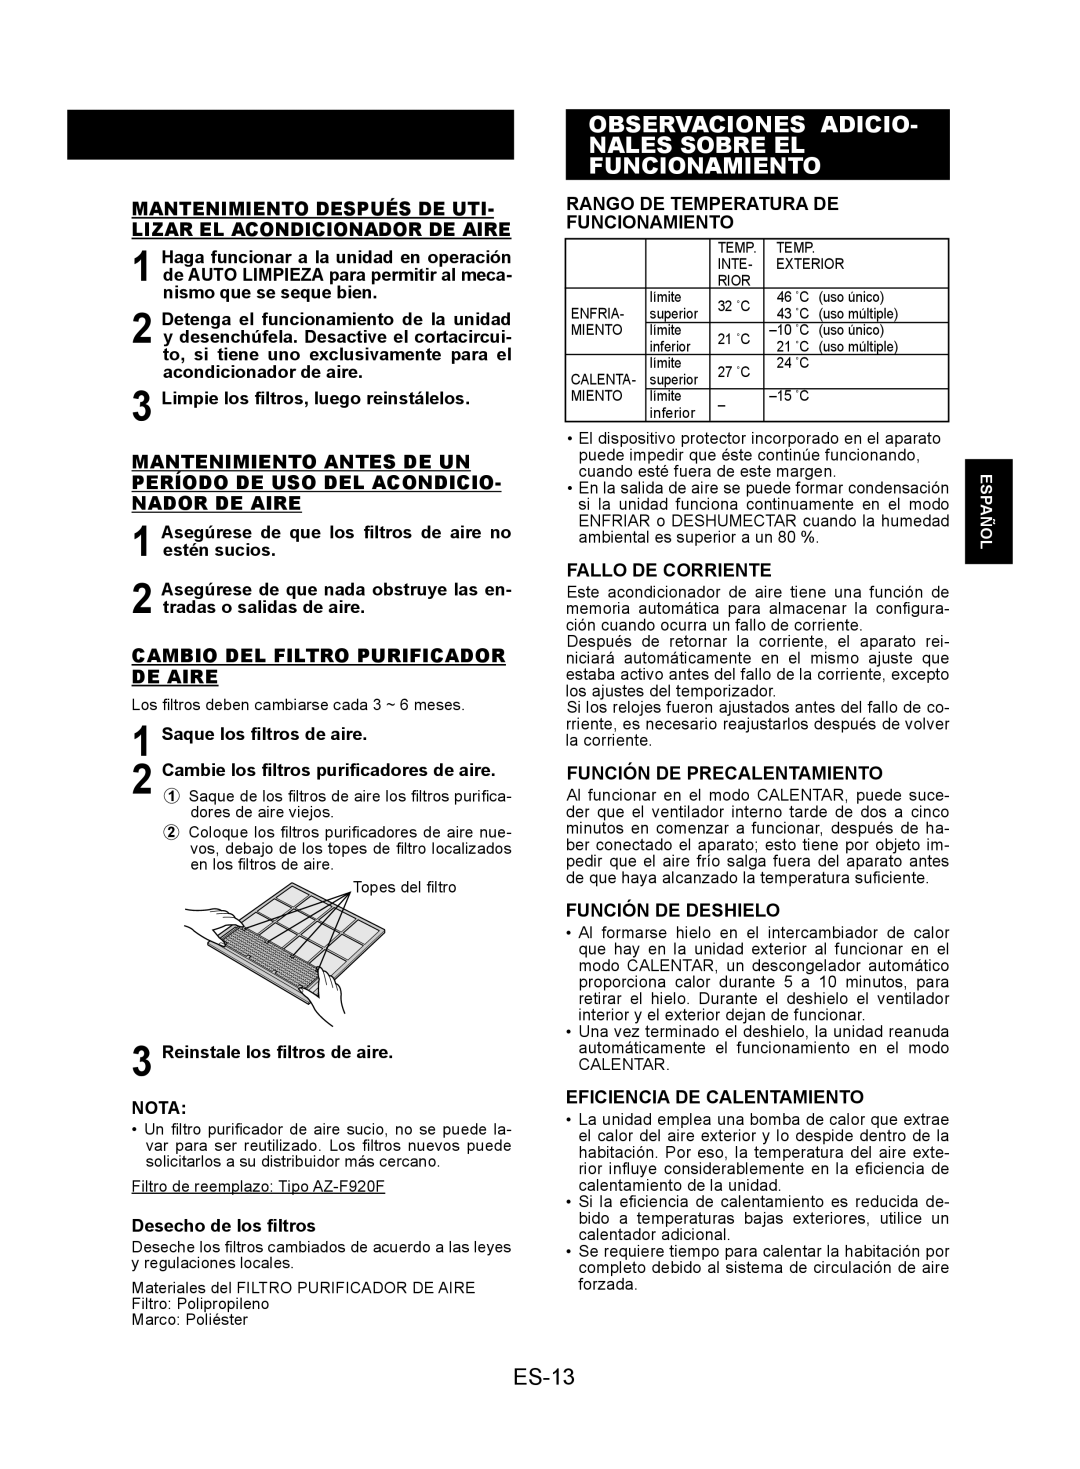 Sharp AY-XPC12JR ES-13, Rango De Temperatura De Funcionamiento, Fallo De Corriente, Función De Precalentamiento, Español 